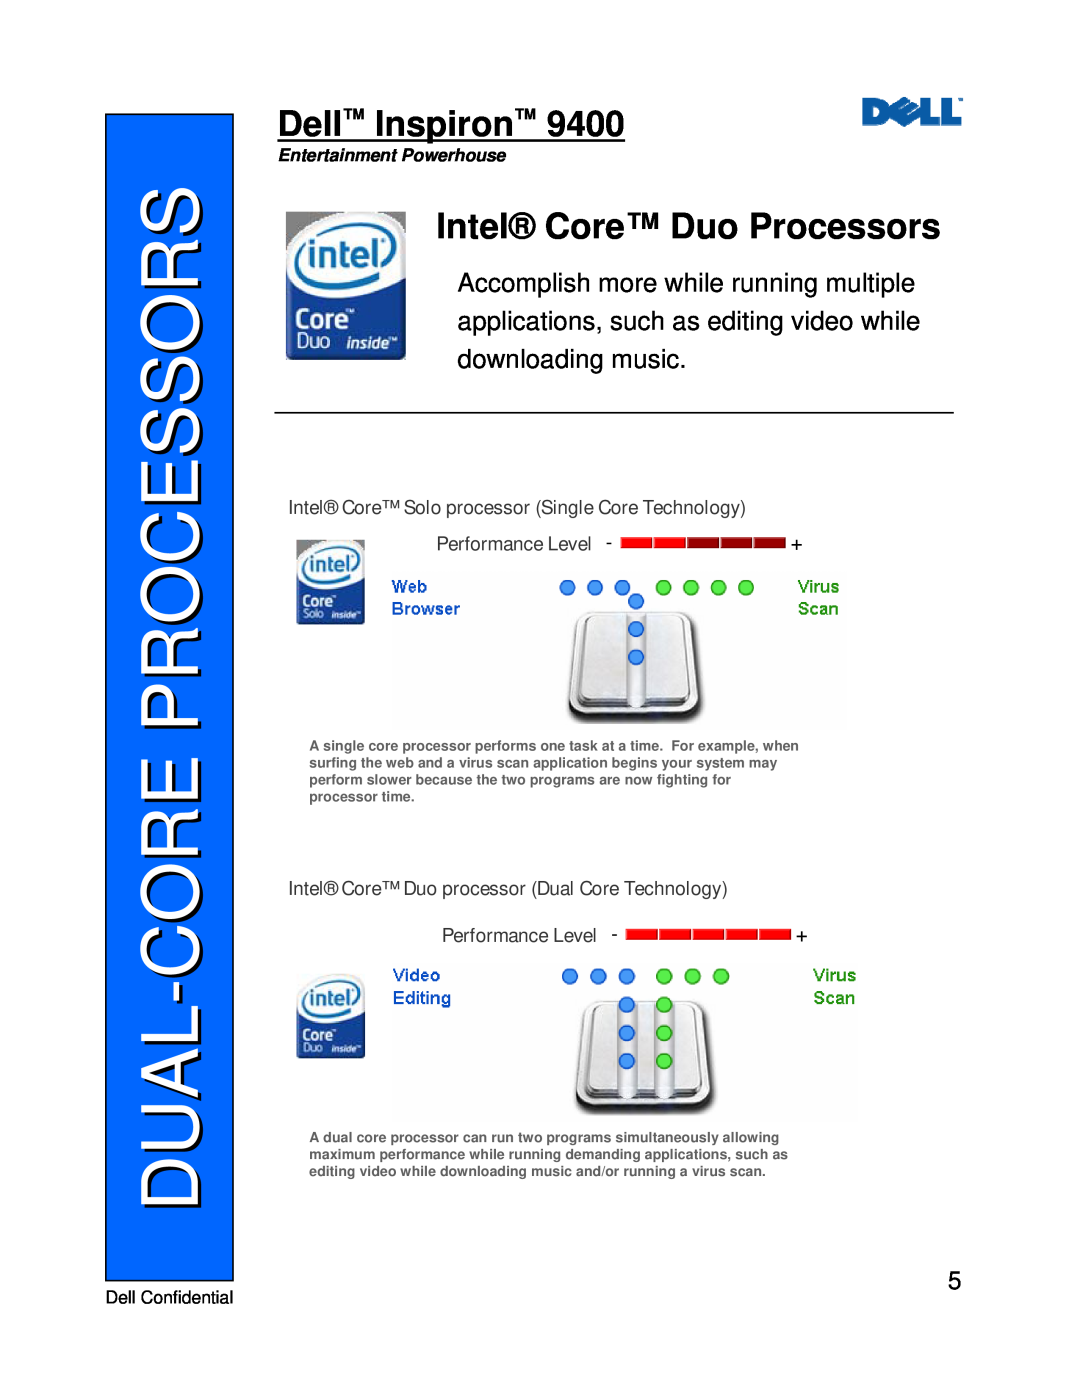 Dell 9400 Dual-Core Processors, Intel Core Duo Processors, Dell Inspiron, Intel Core Solo processor Single Core Technology 